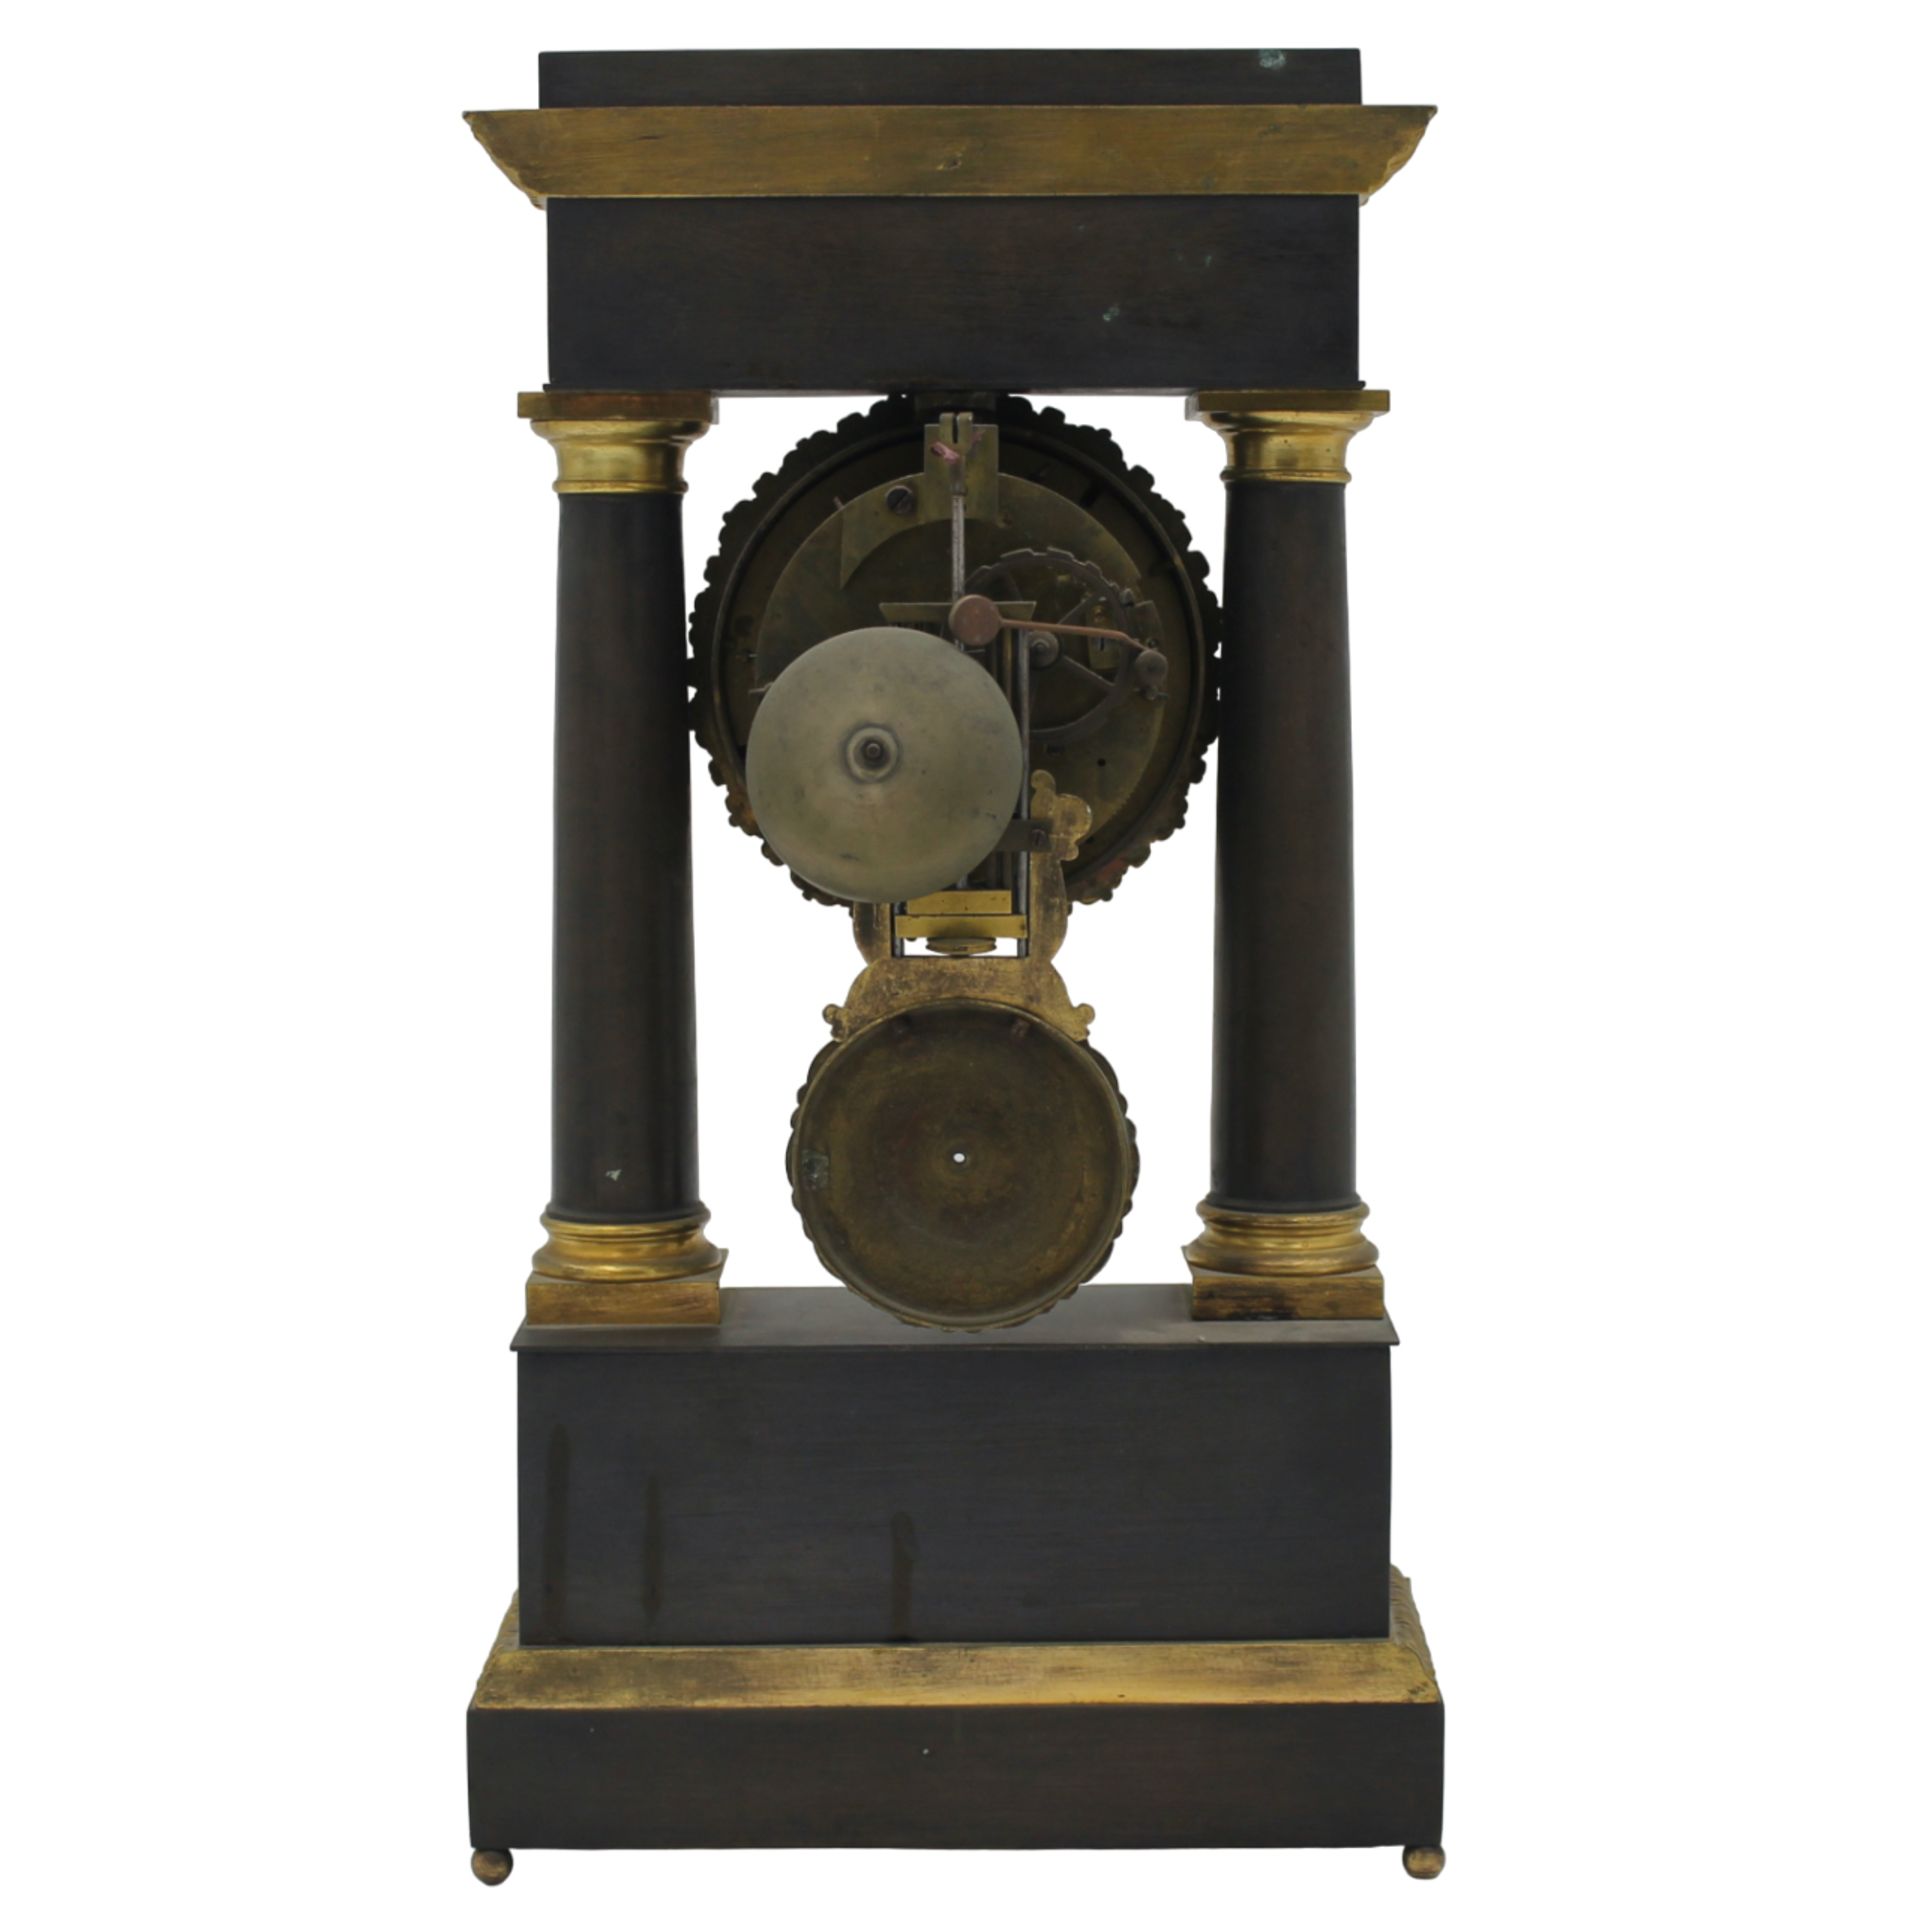 Orologio da tavolo - Table clock - Image 2 of 2